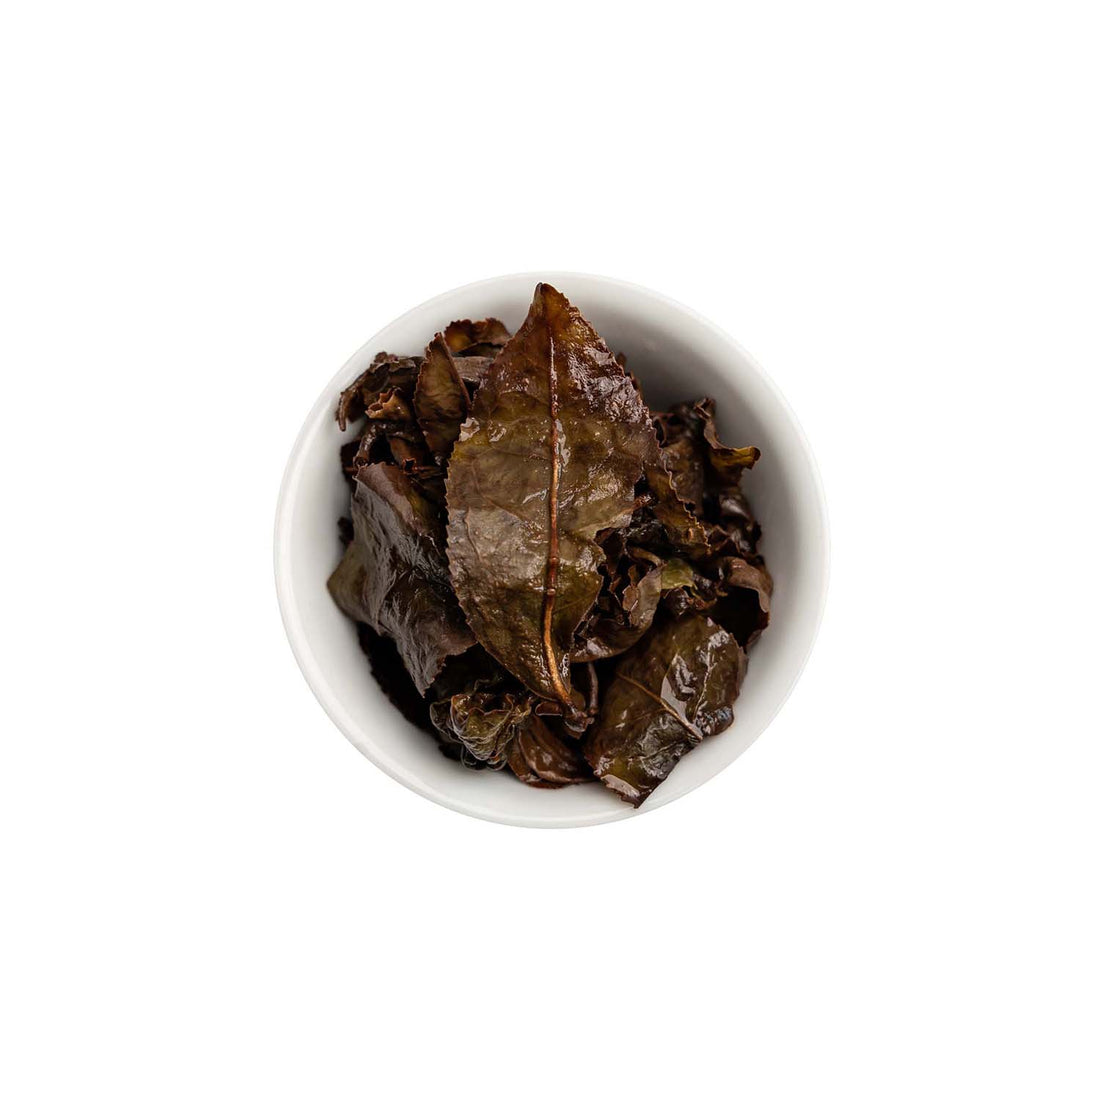 Ein ansprechendes Foto von den losen, aufgebrühten Blättern unseres Oolong Tees Bright Rose in einer Tasse.